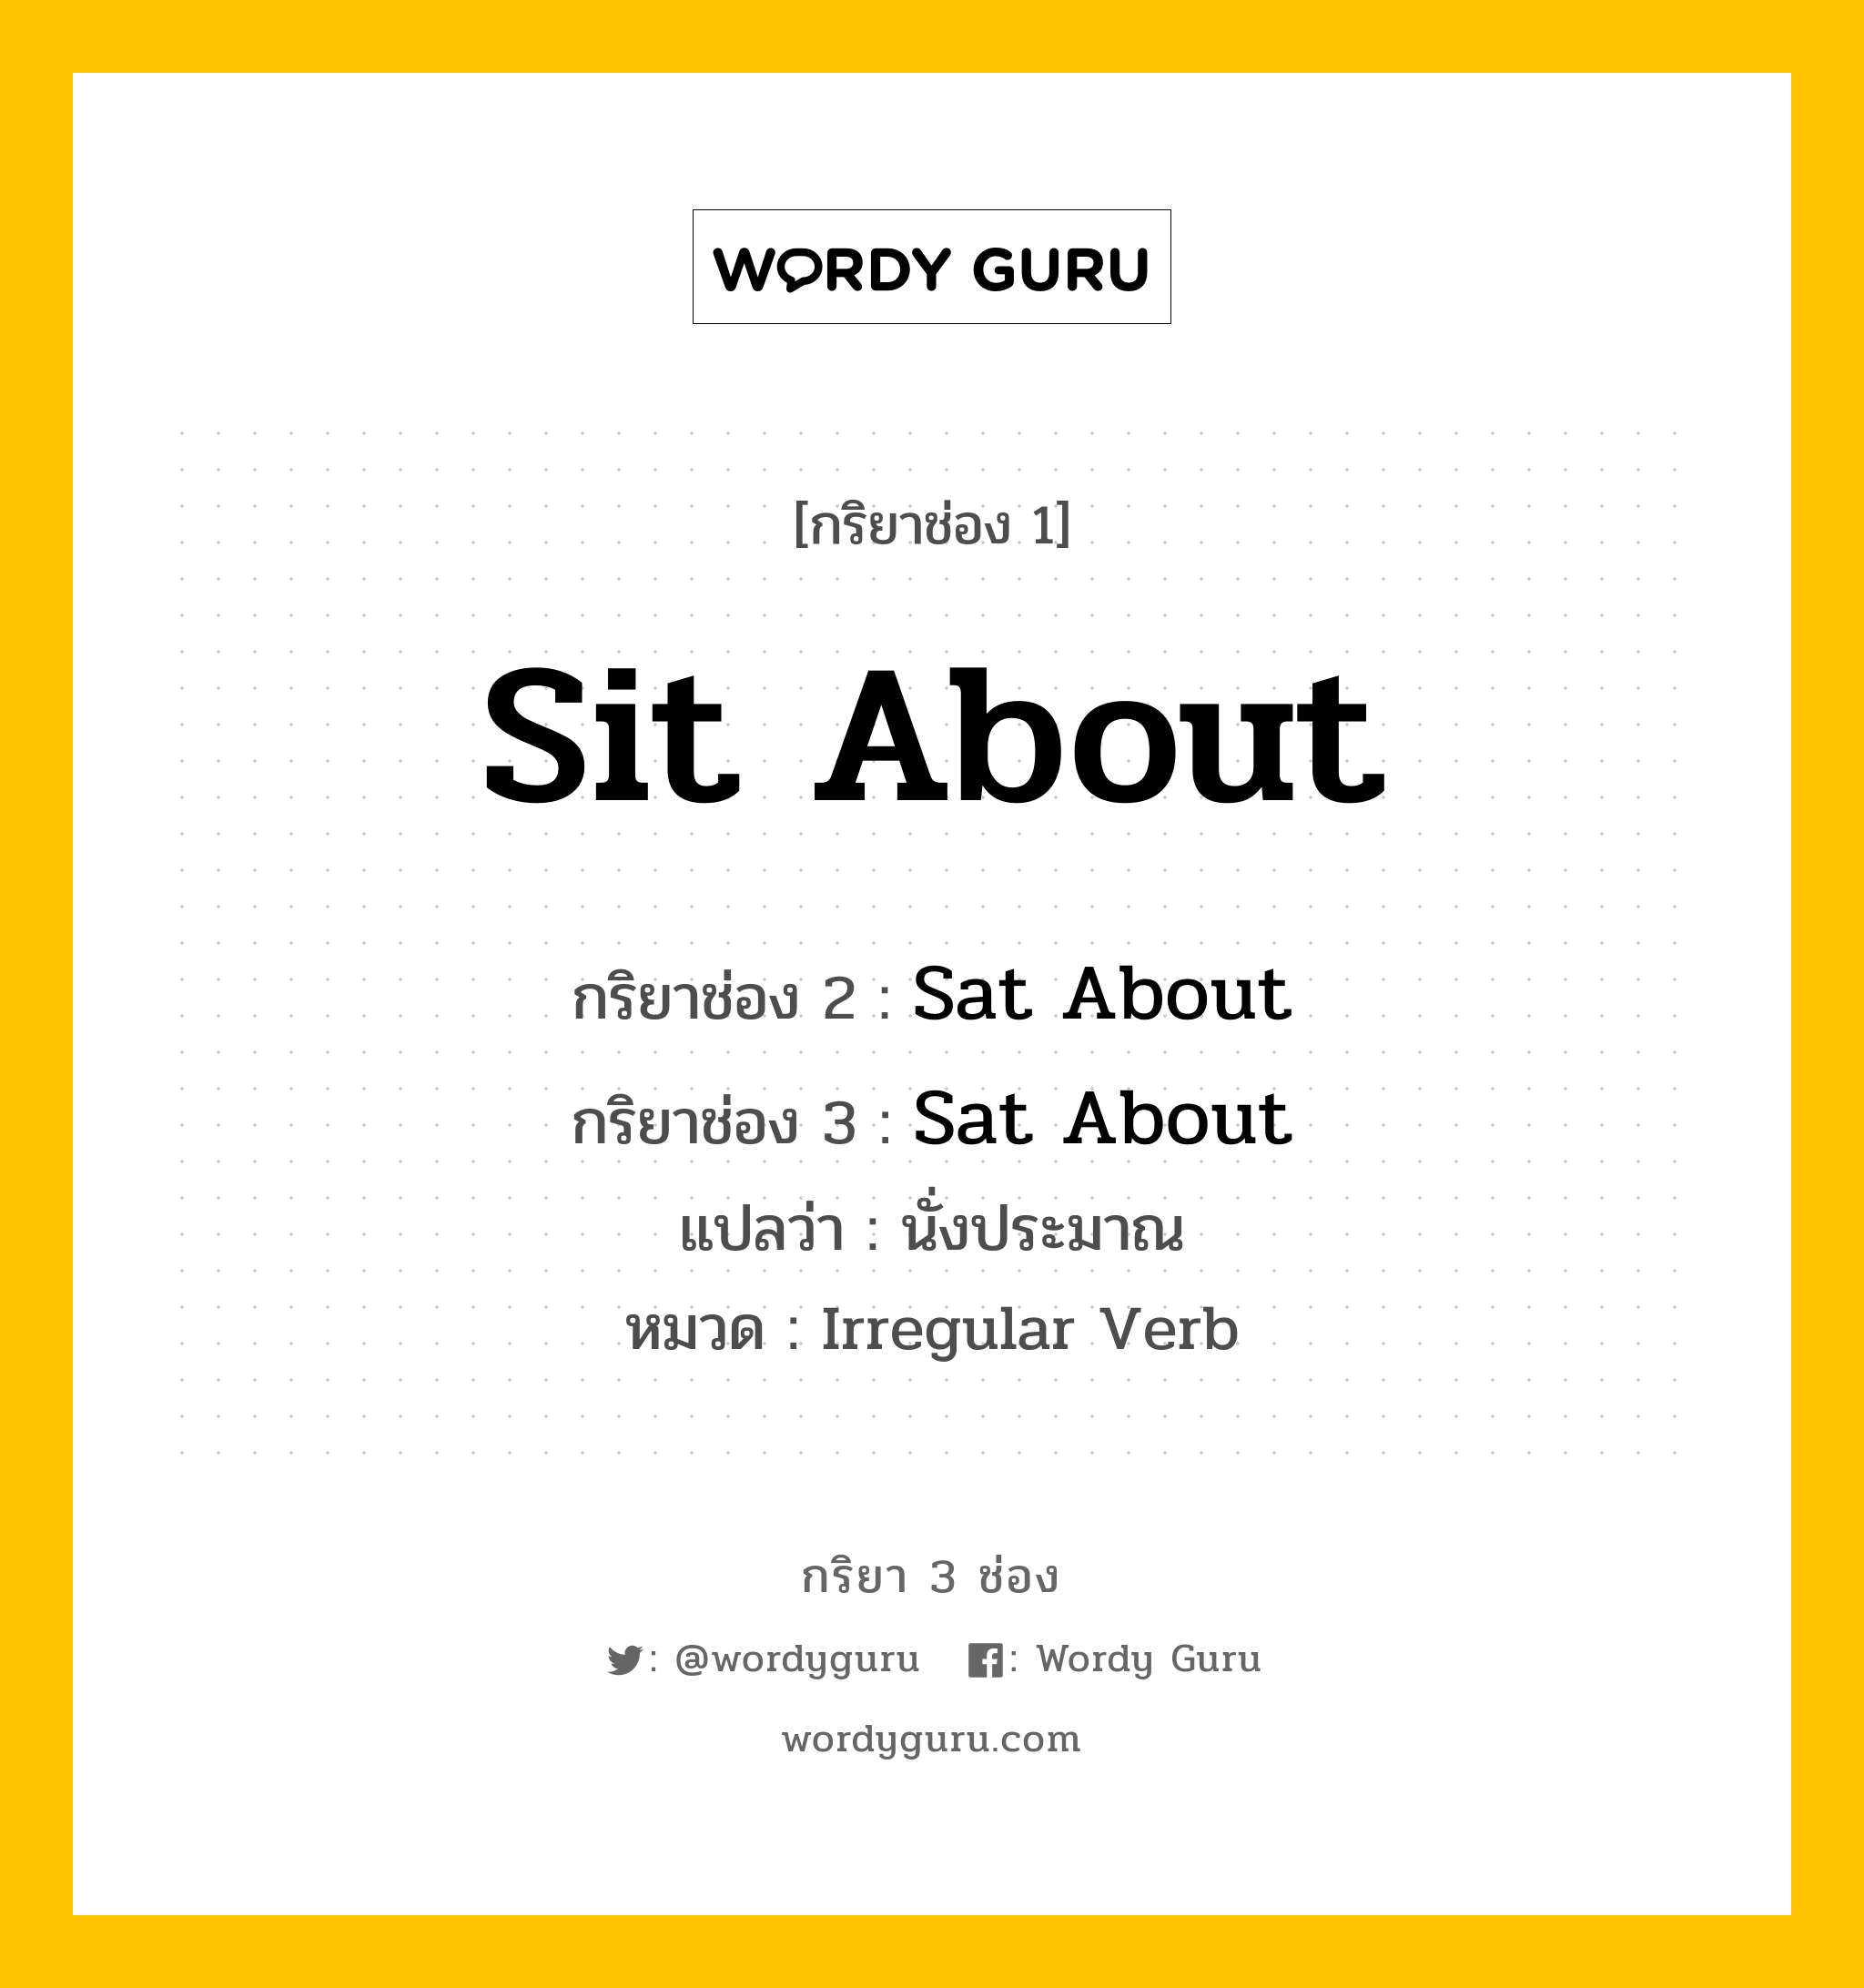 กริยา 3 ช่อง ของ Sit About คืออะไร? มาดูคำอ่าน คำแปลกันเลย, กริยาช่อง 1 Sit About กริยาช่อง 2 Sat About กริยาช่อง 3 Sat About แปลว่า นั่งประมาณ หมวด Irregular Verb หมวด Irregular Verb